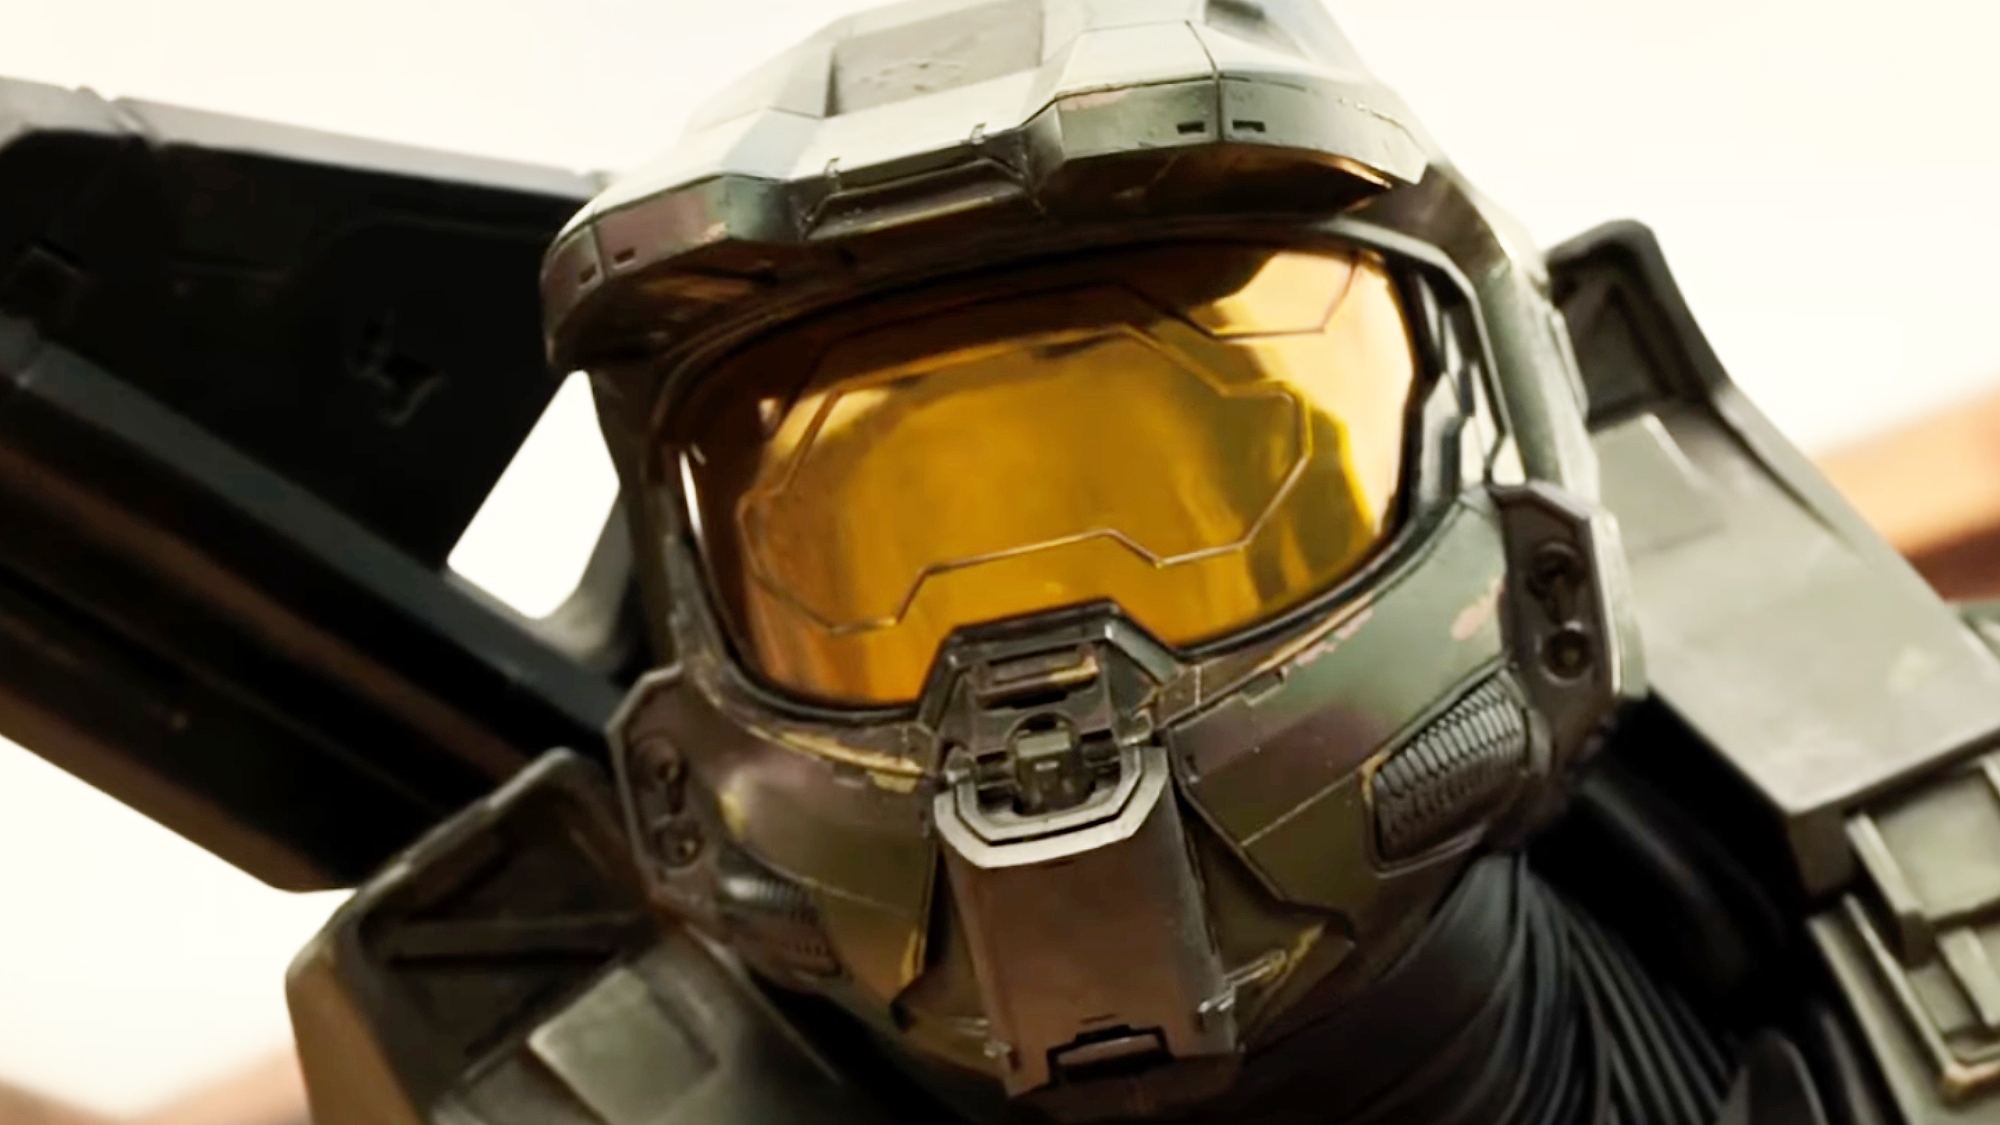 Halo Season 1 Trailer  Rotten Tomatoes TV 